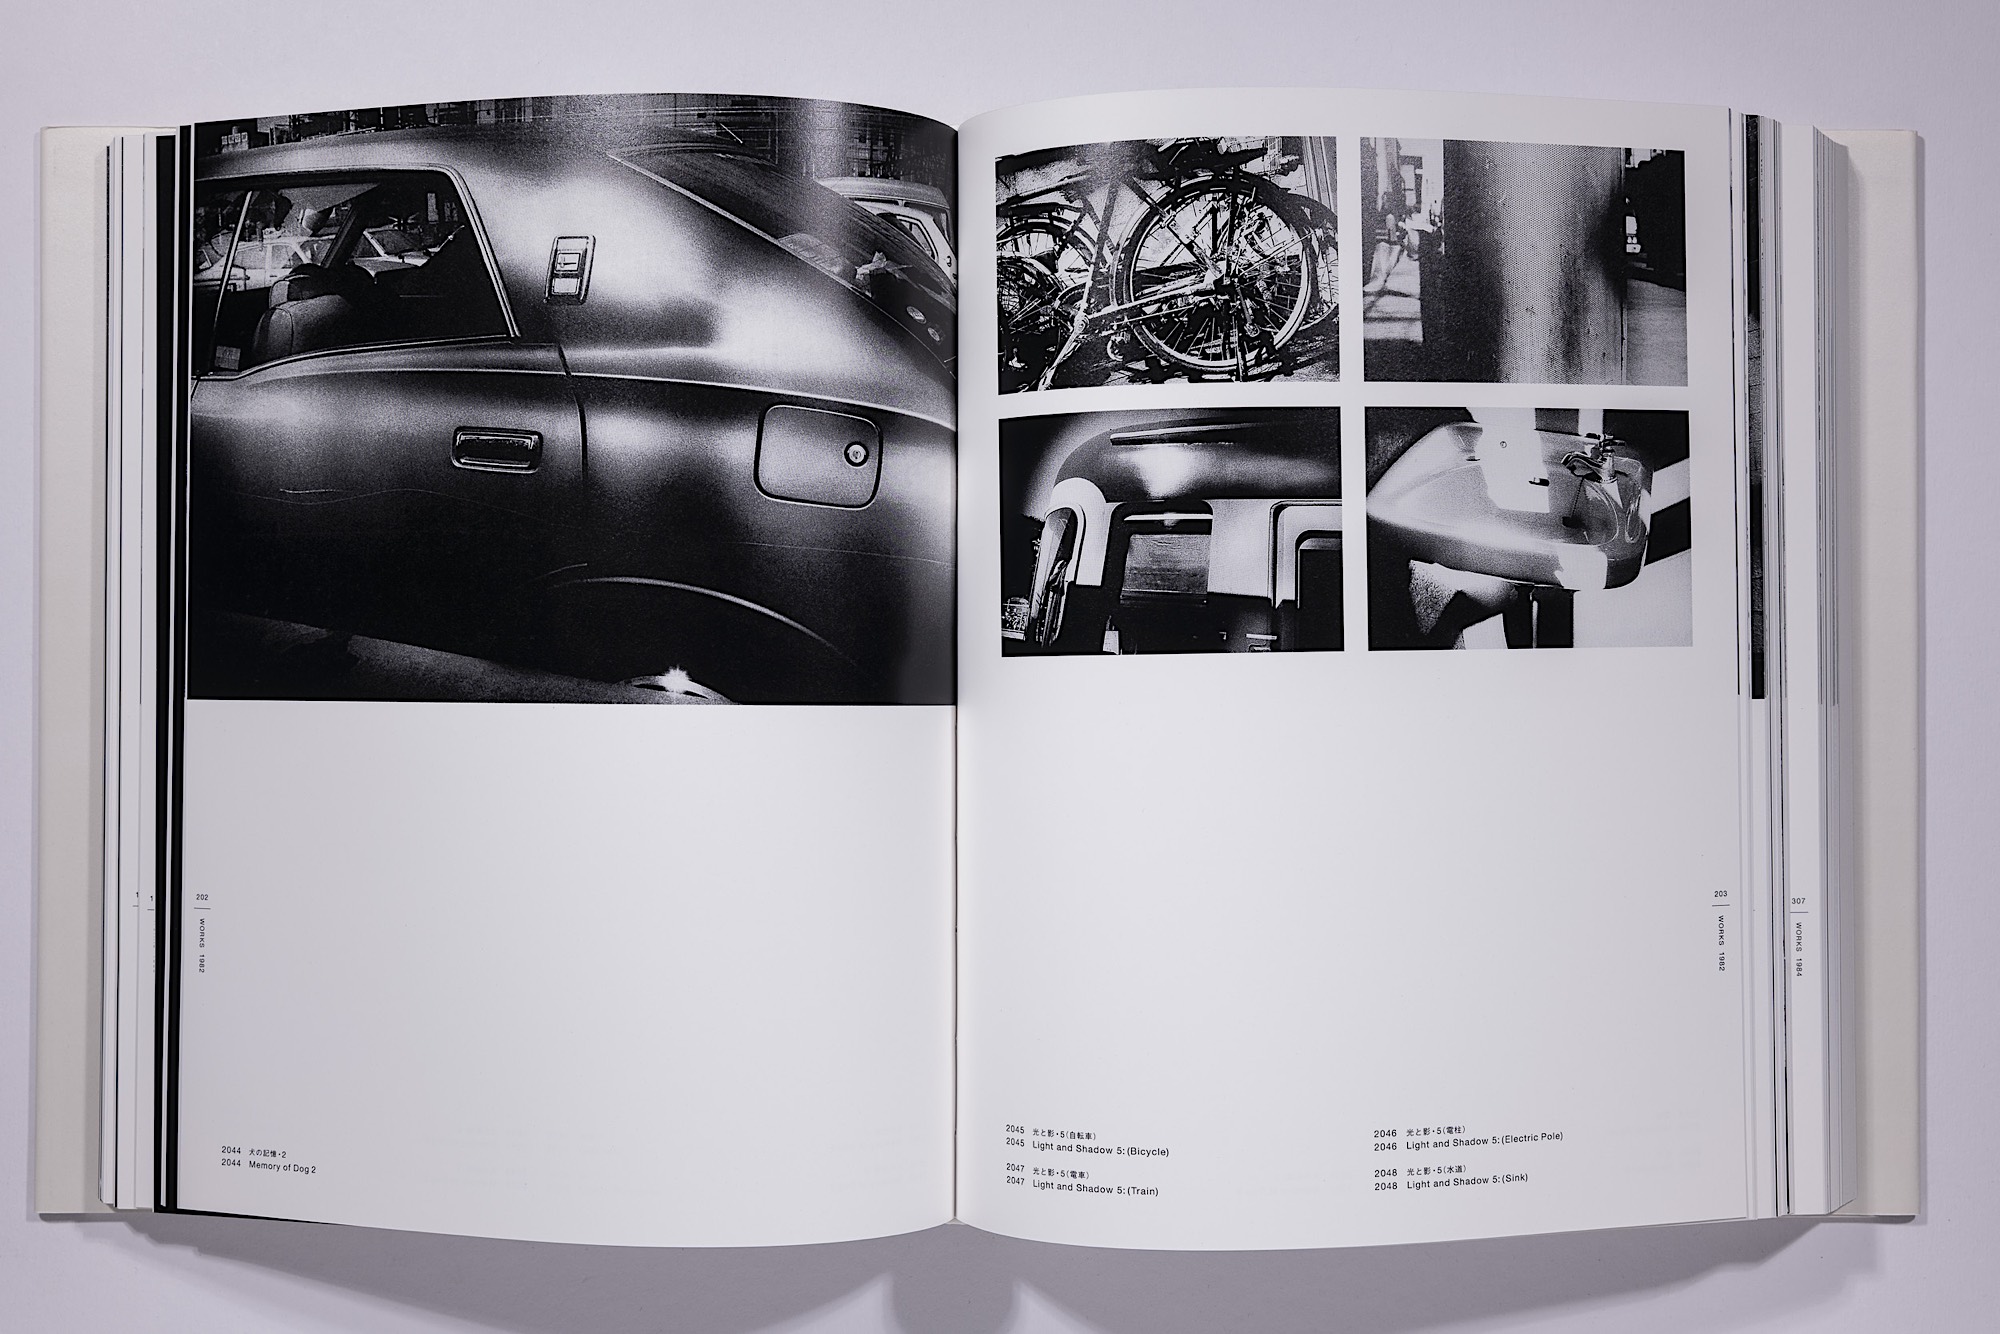 Daido Moriyama - The Complete Works of Daido Moriyama Image 48